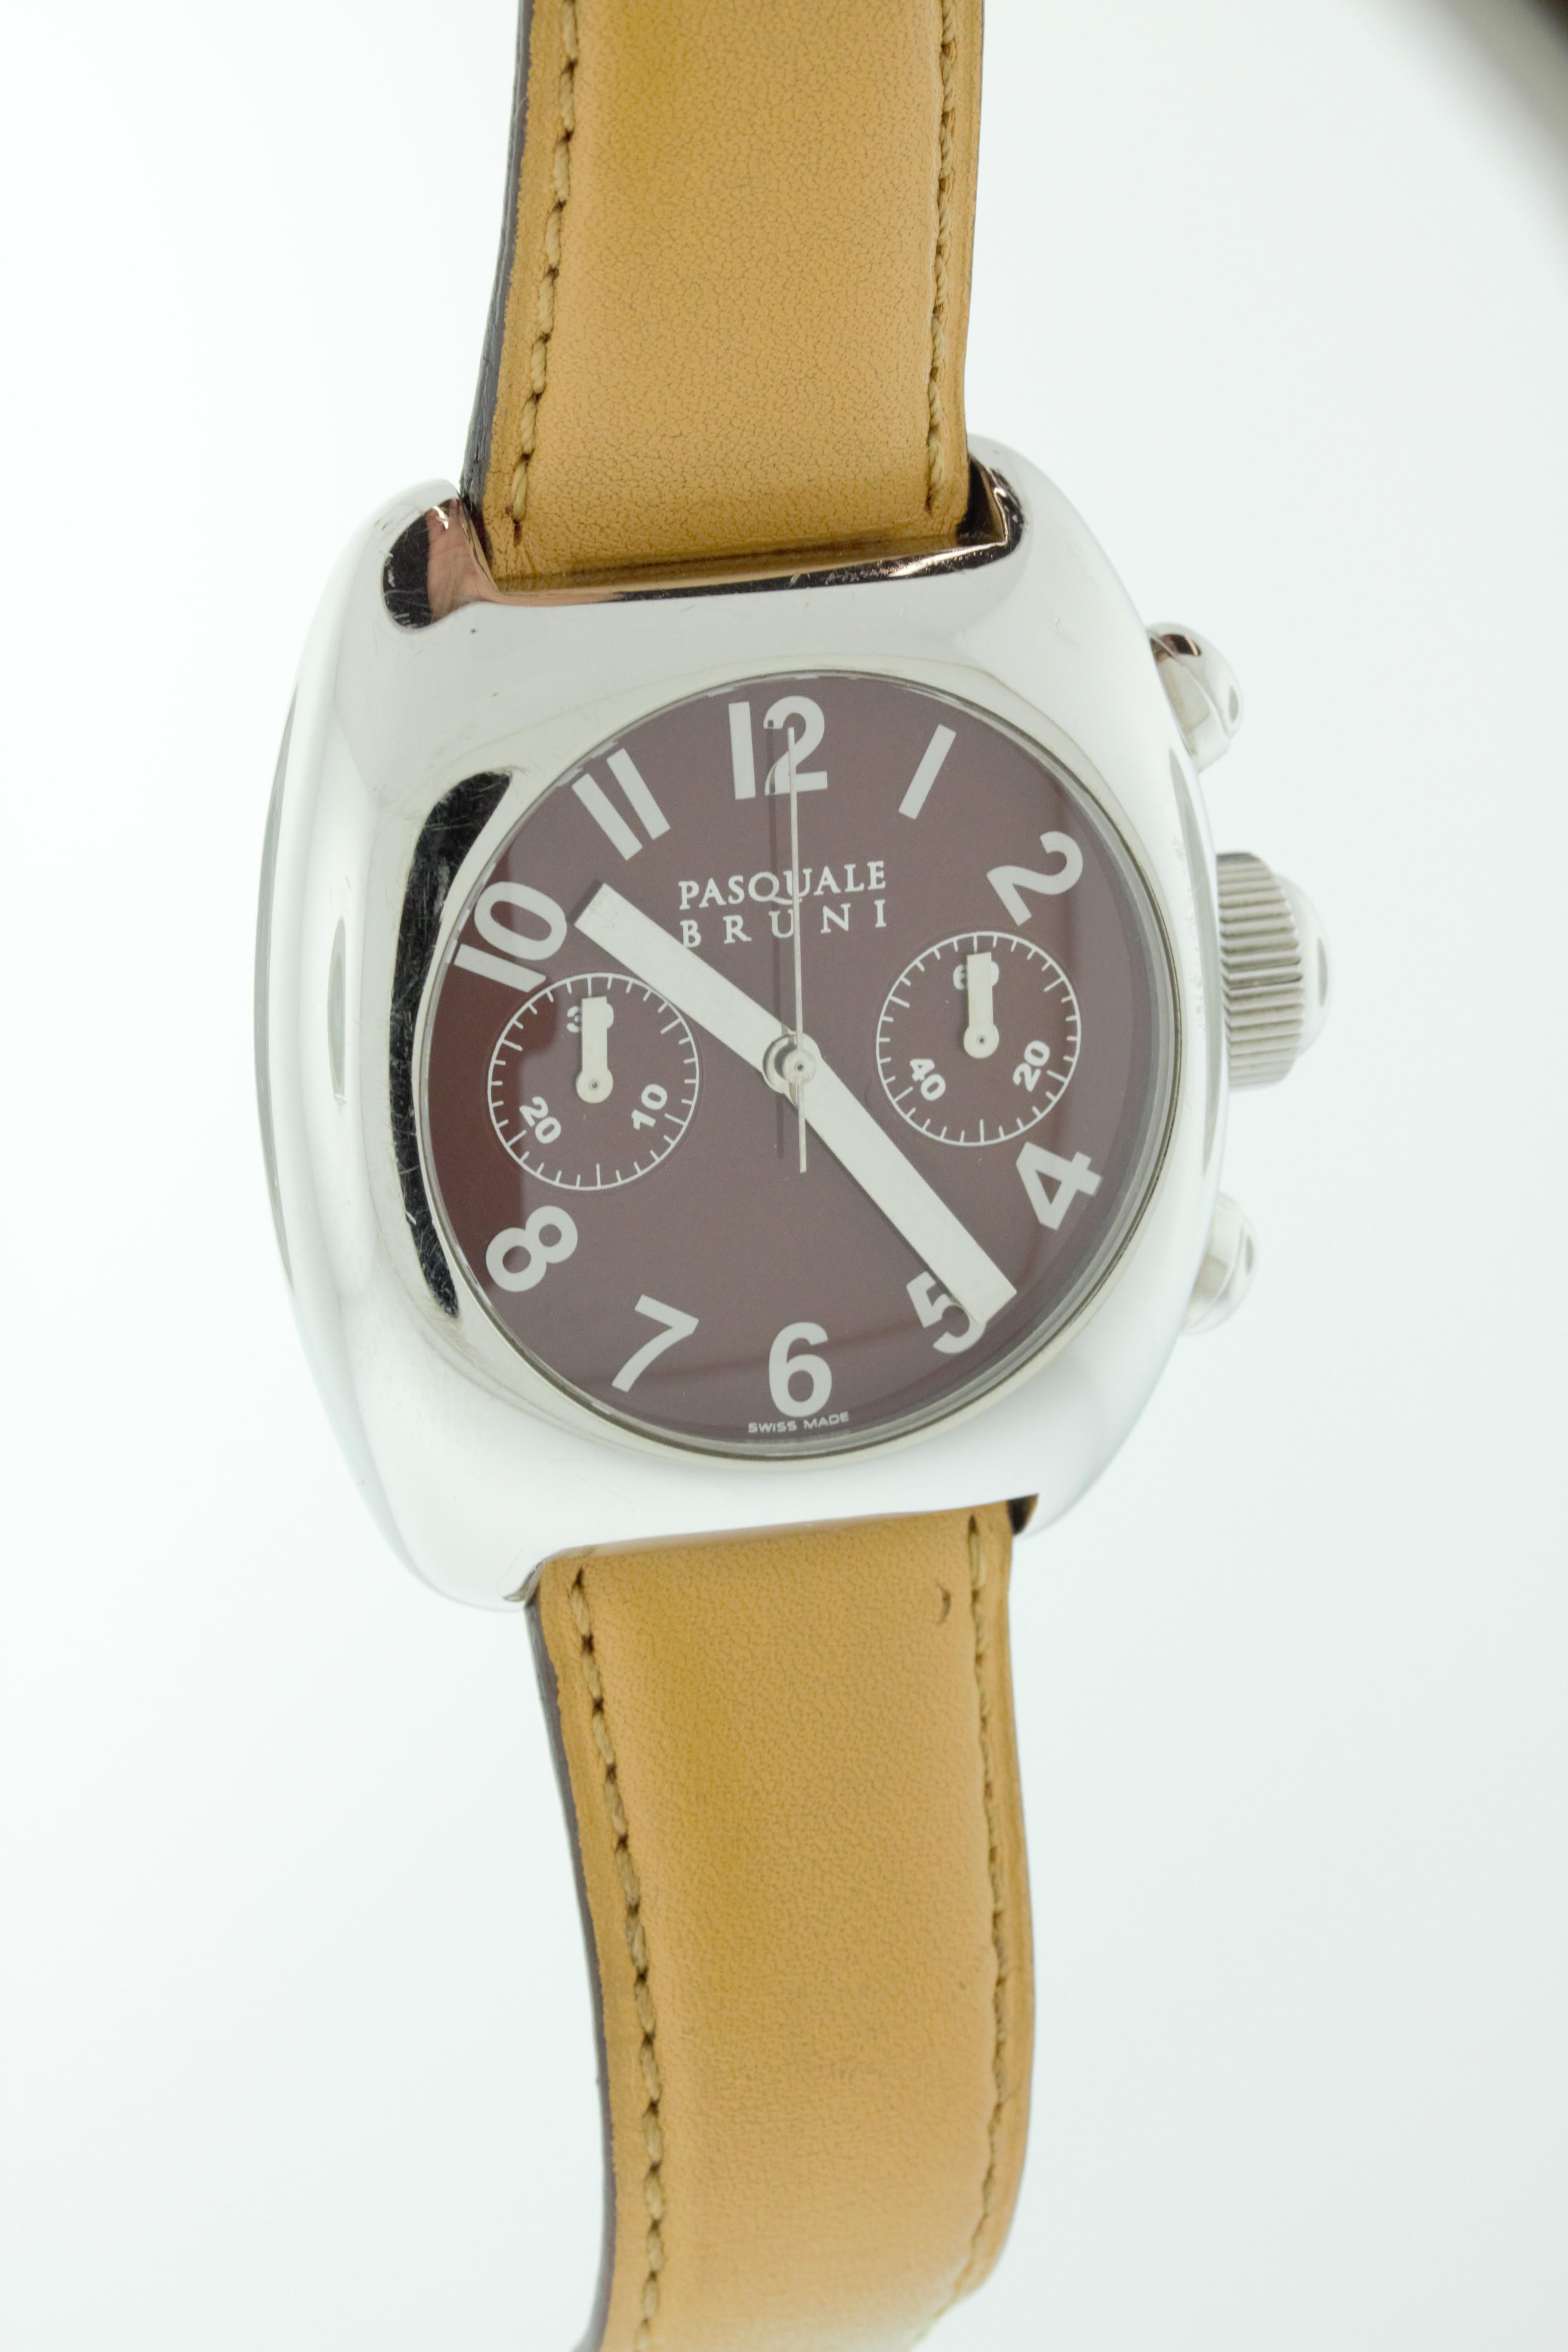 Cette montre en acier inoxydable présente un cadran brun et un bracelet en cuir brun. Fabriqué en Suisse par Pasquale Bruni. 
La face avant de l'étui est en très bon état avec quelques rayures mineures. Le bracelet en cuir et le dos de l'étui